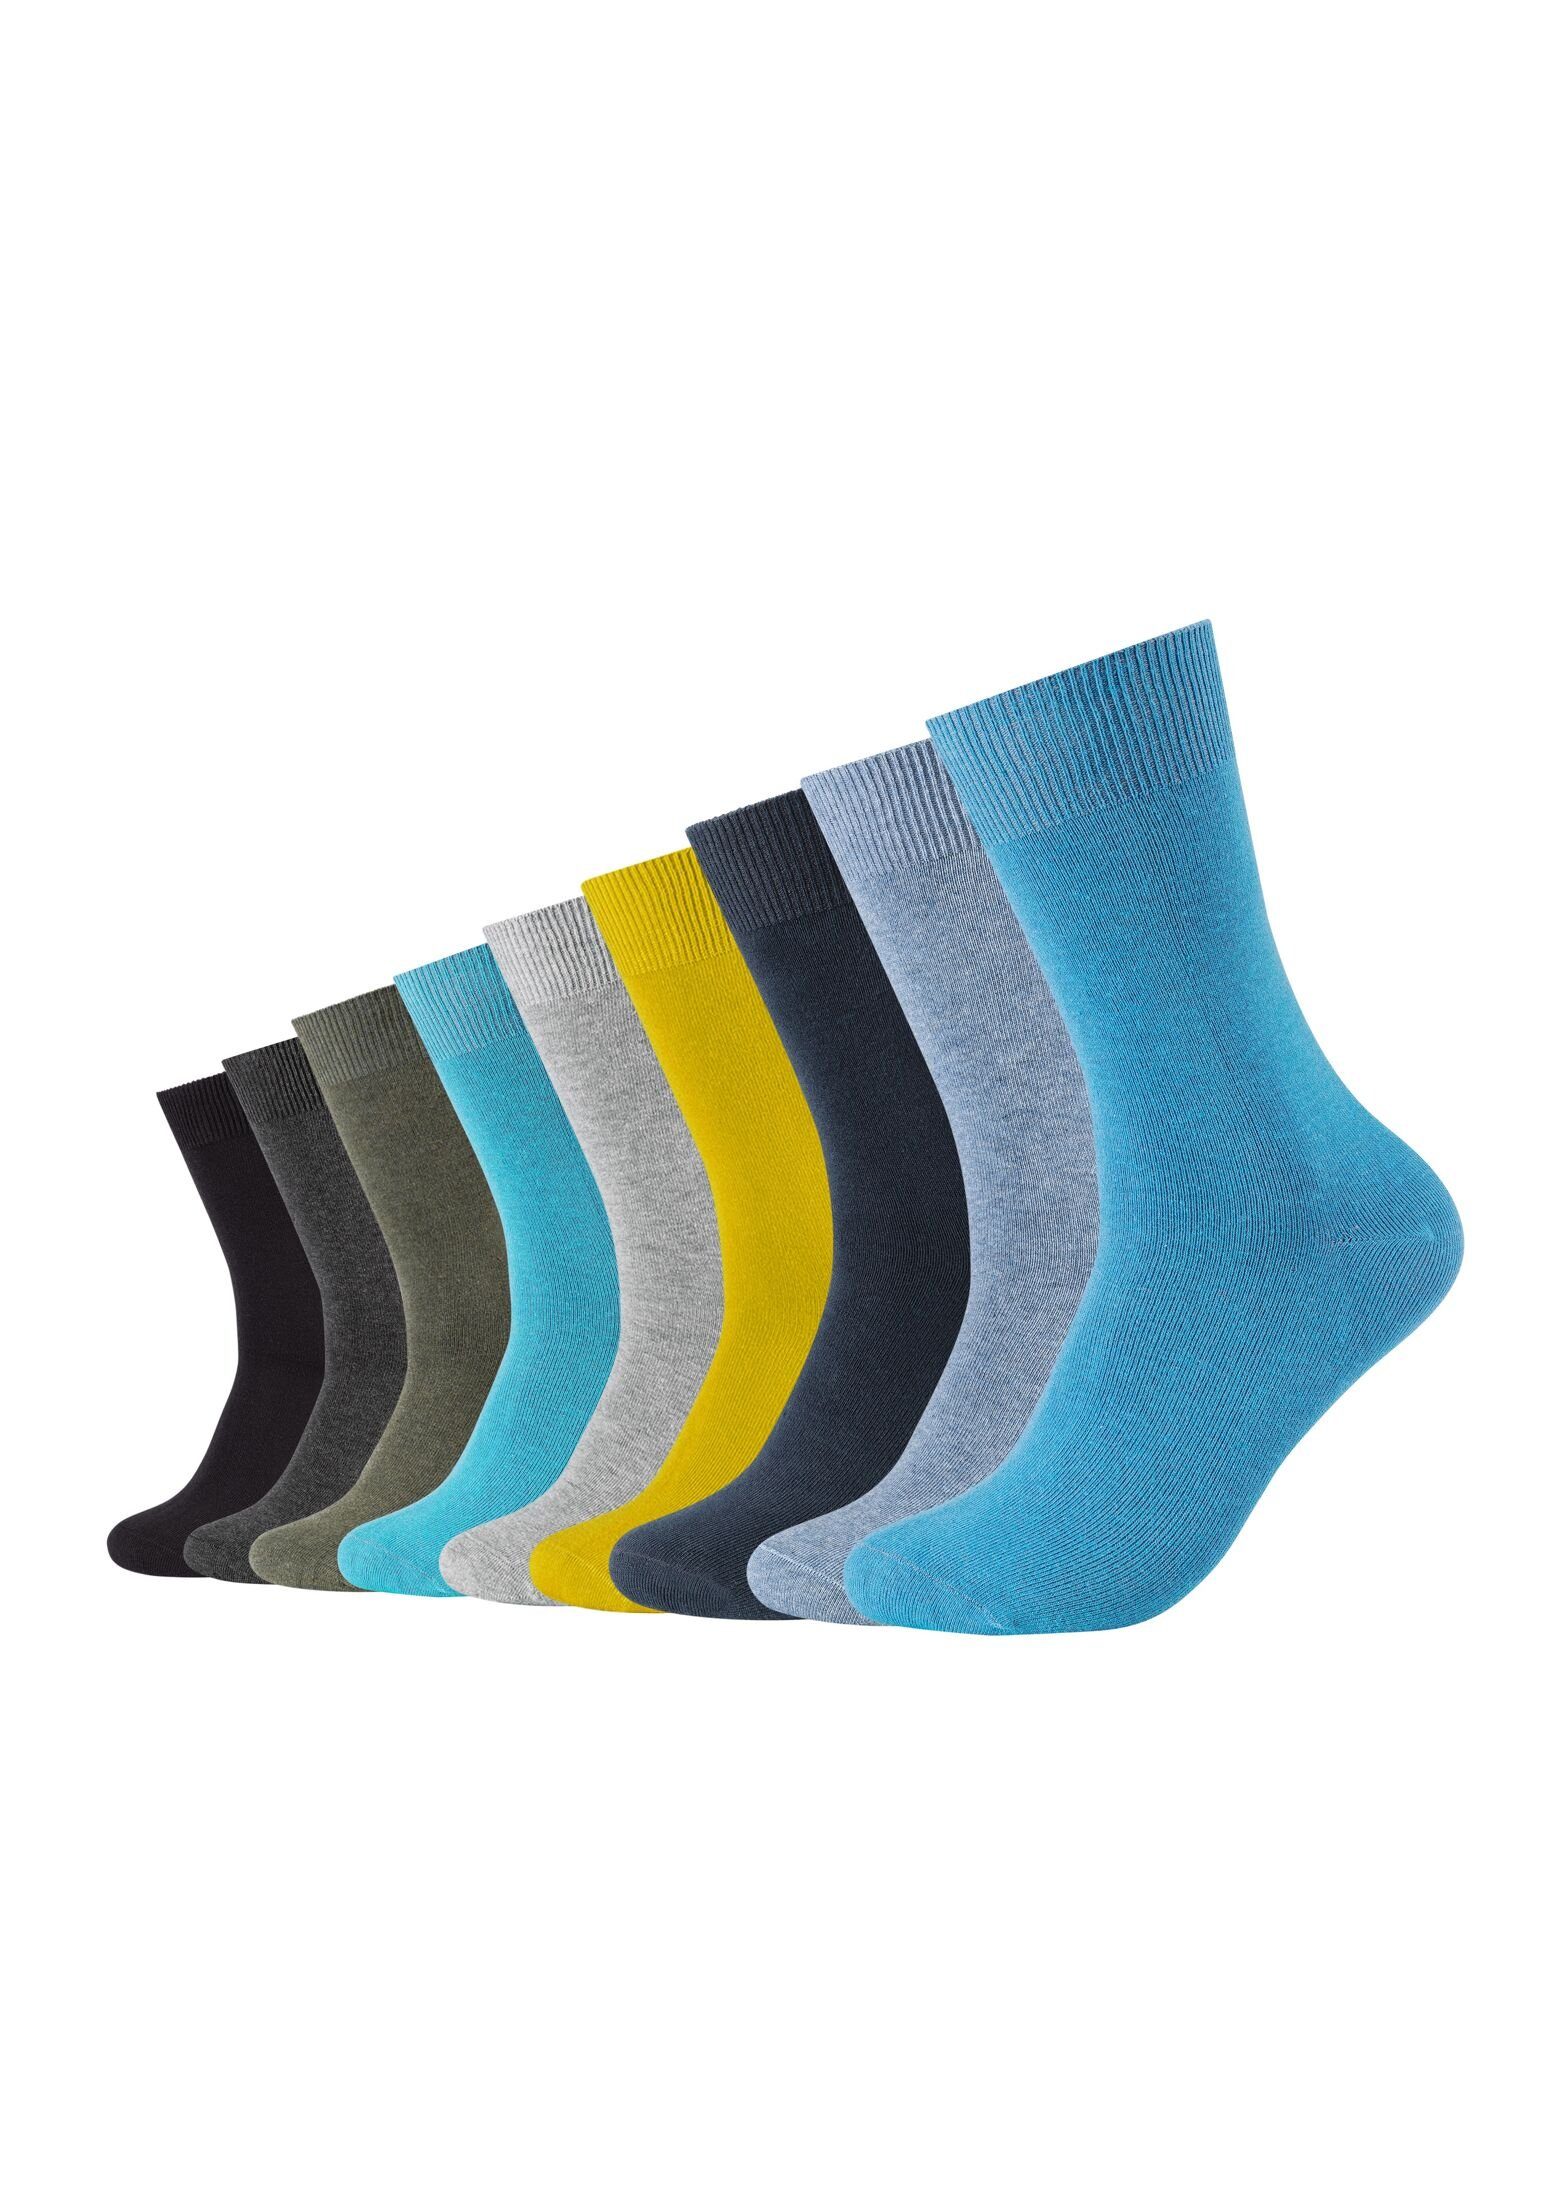 9er Camano turquoise Socken Pack Socken